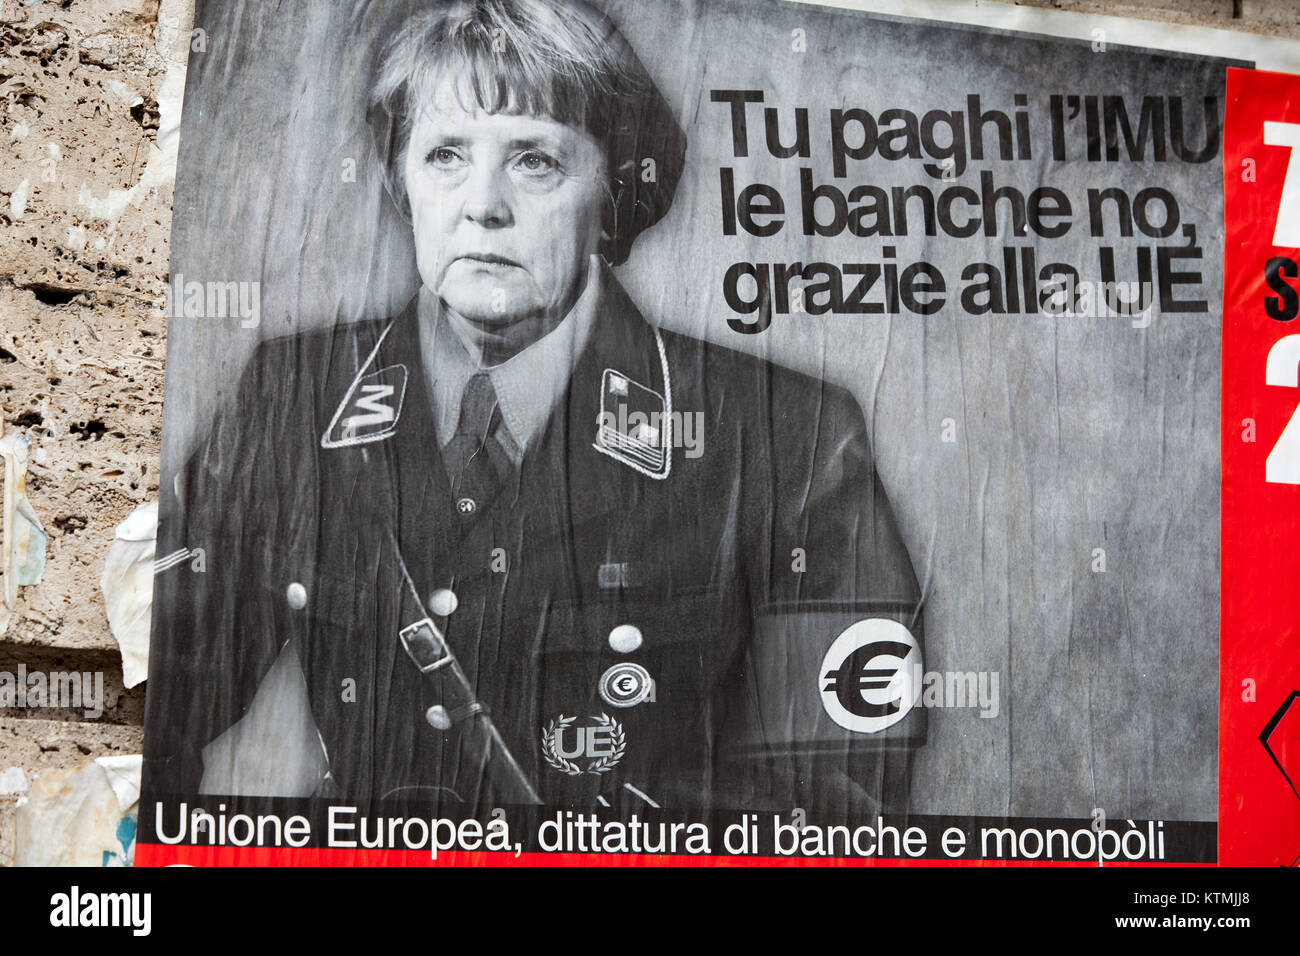 Меркель в нацистской форме